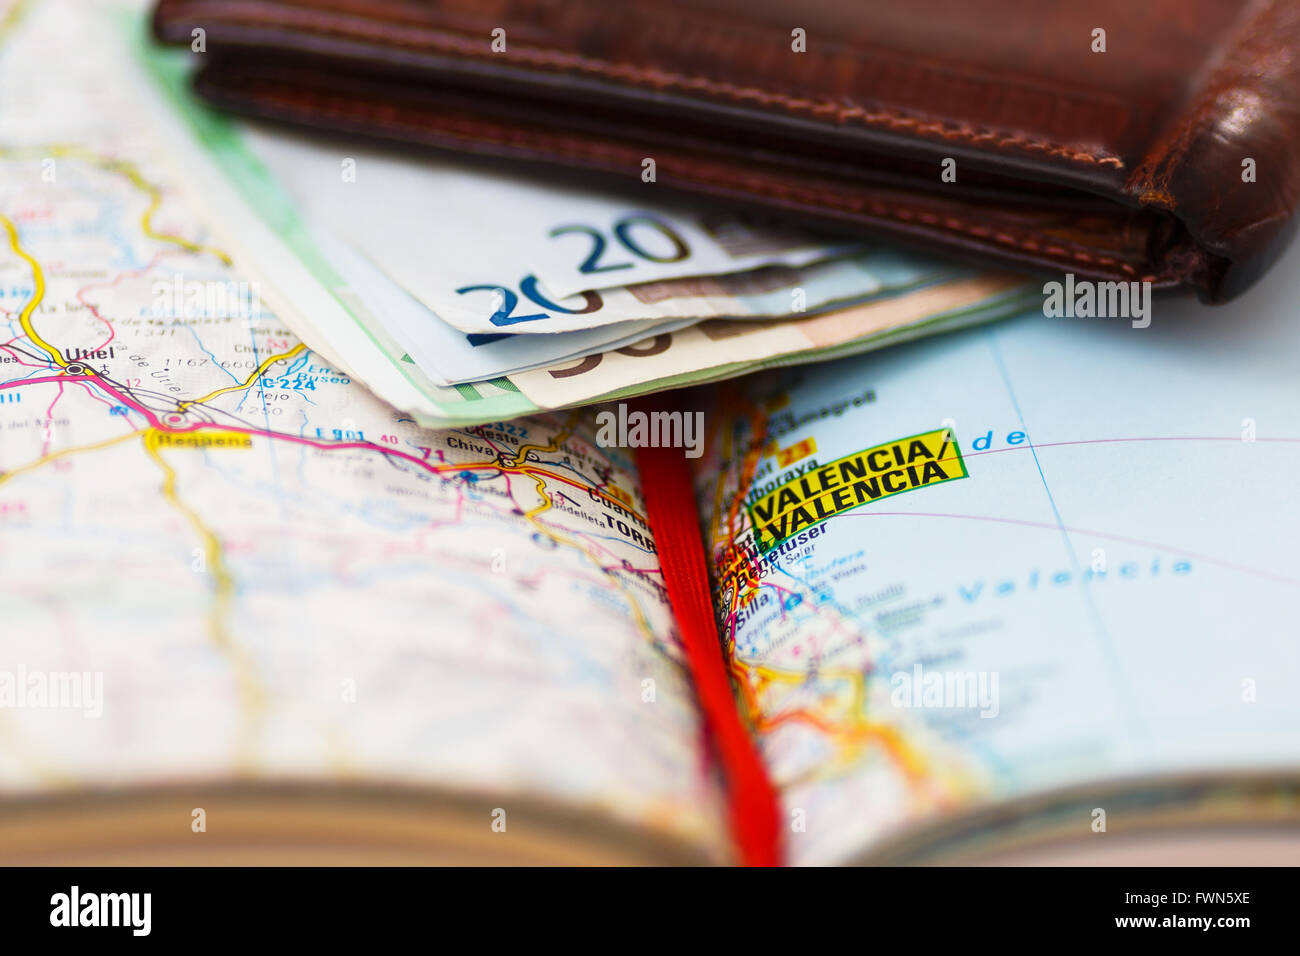 Billets à l'intérieur pochette sur une carte géographique de Valence, Espagne Banque D'Images